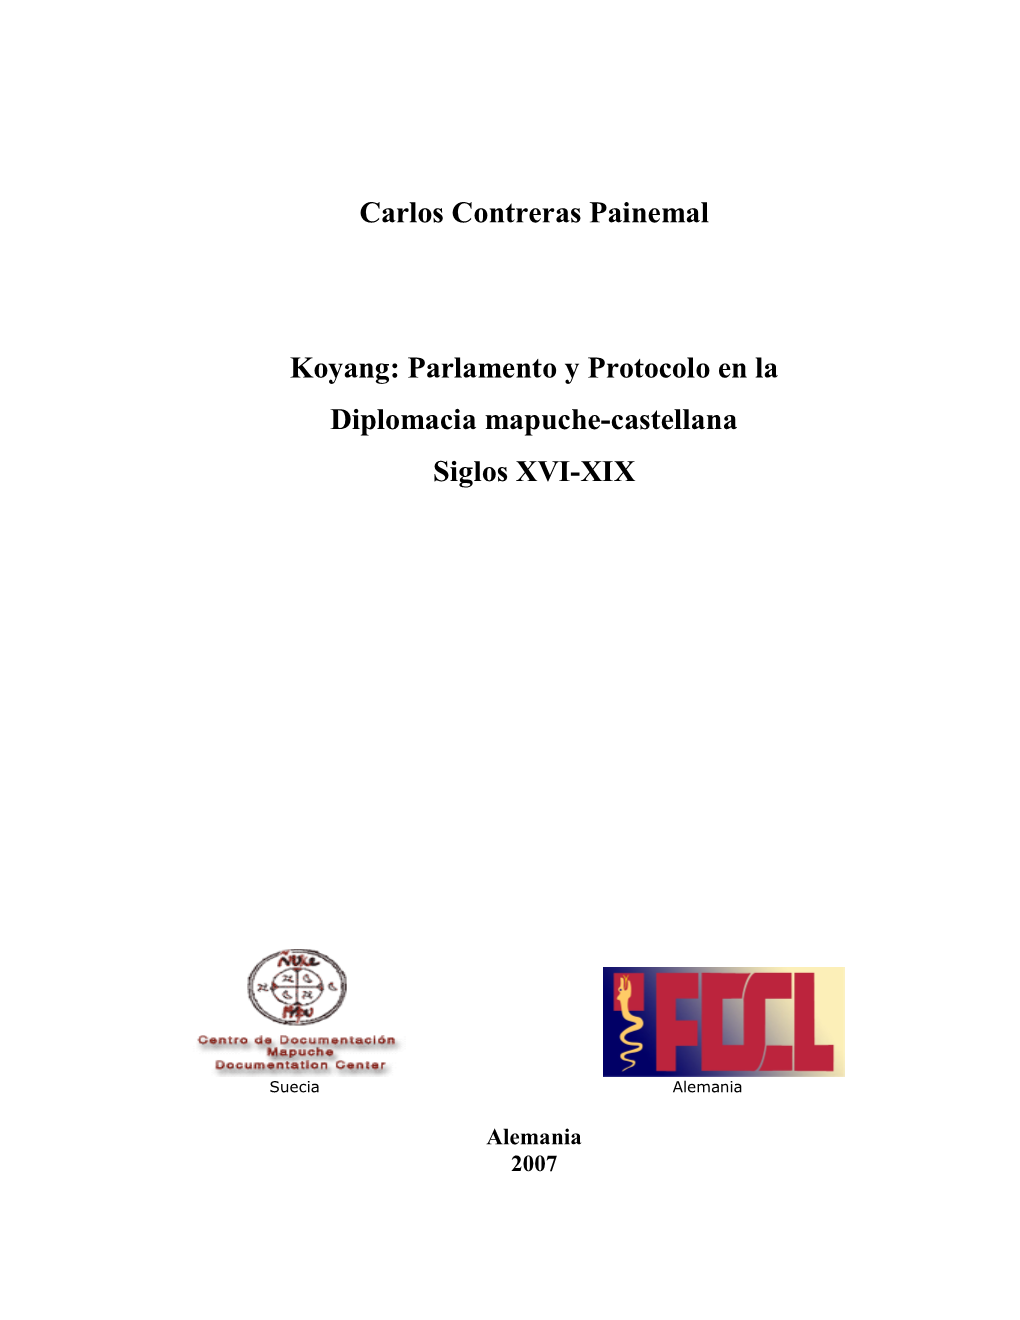 Carlos Contreras Painemal Koyang: Parlamento Y Protocolo En La Diplomacia… 2